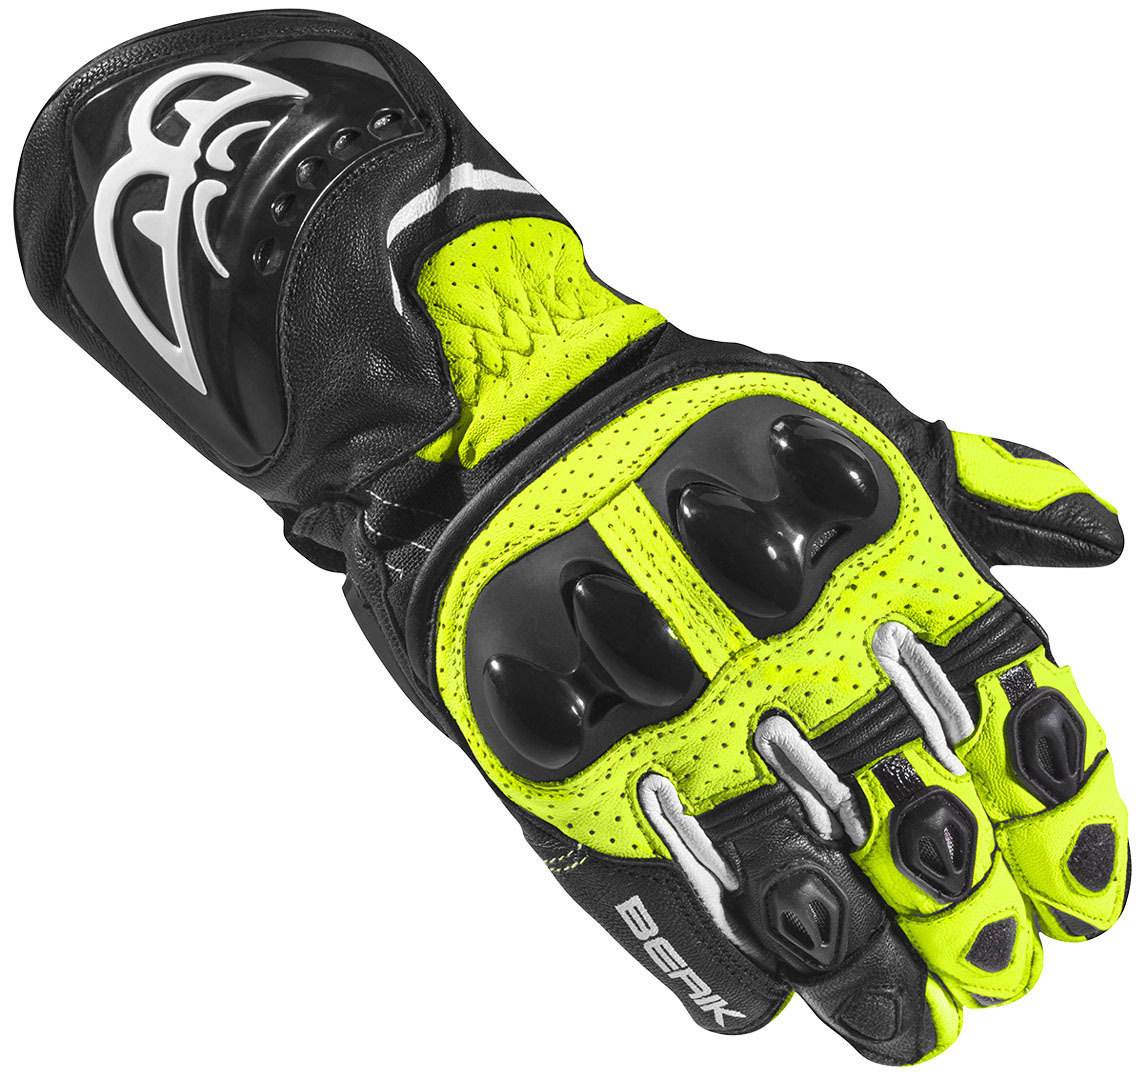 Мотоциклетные перчатки Berik Spa Evo с длинными манжетами, черный/желтый мотоциклетные перчатки spa evo berik черный